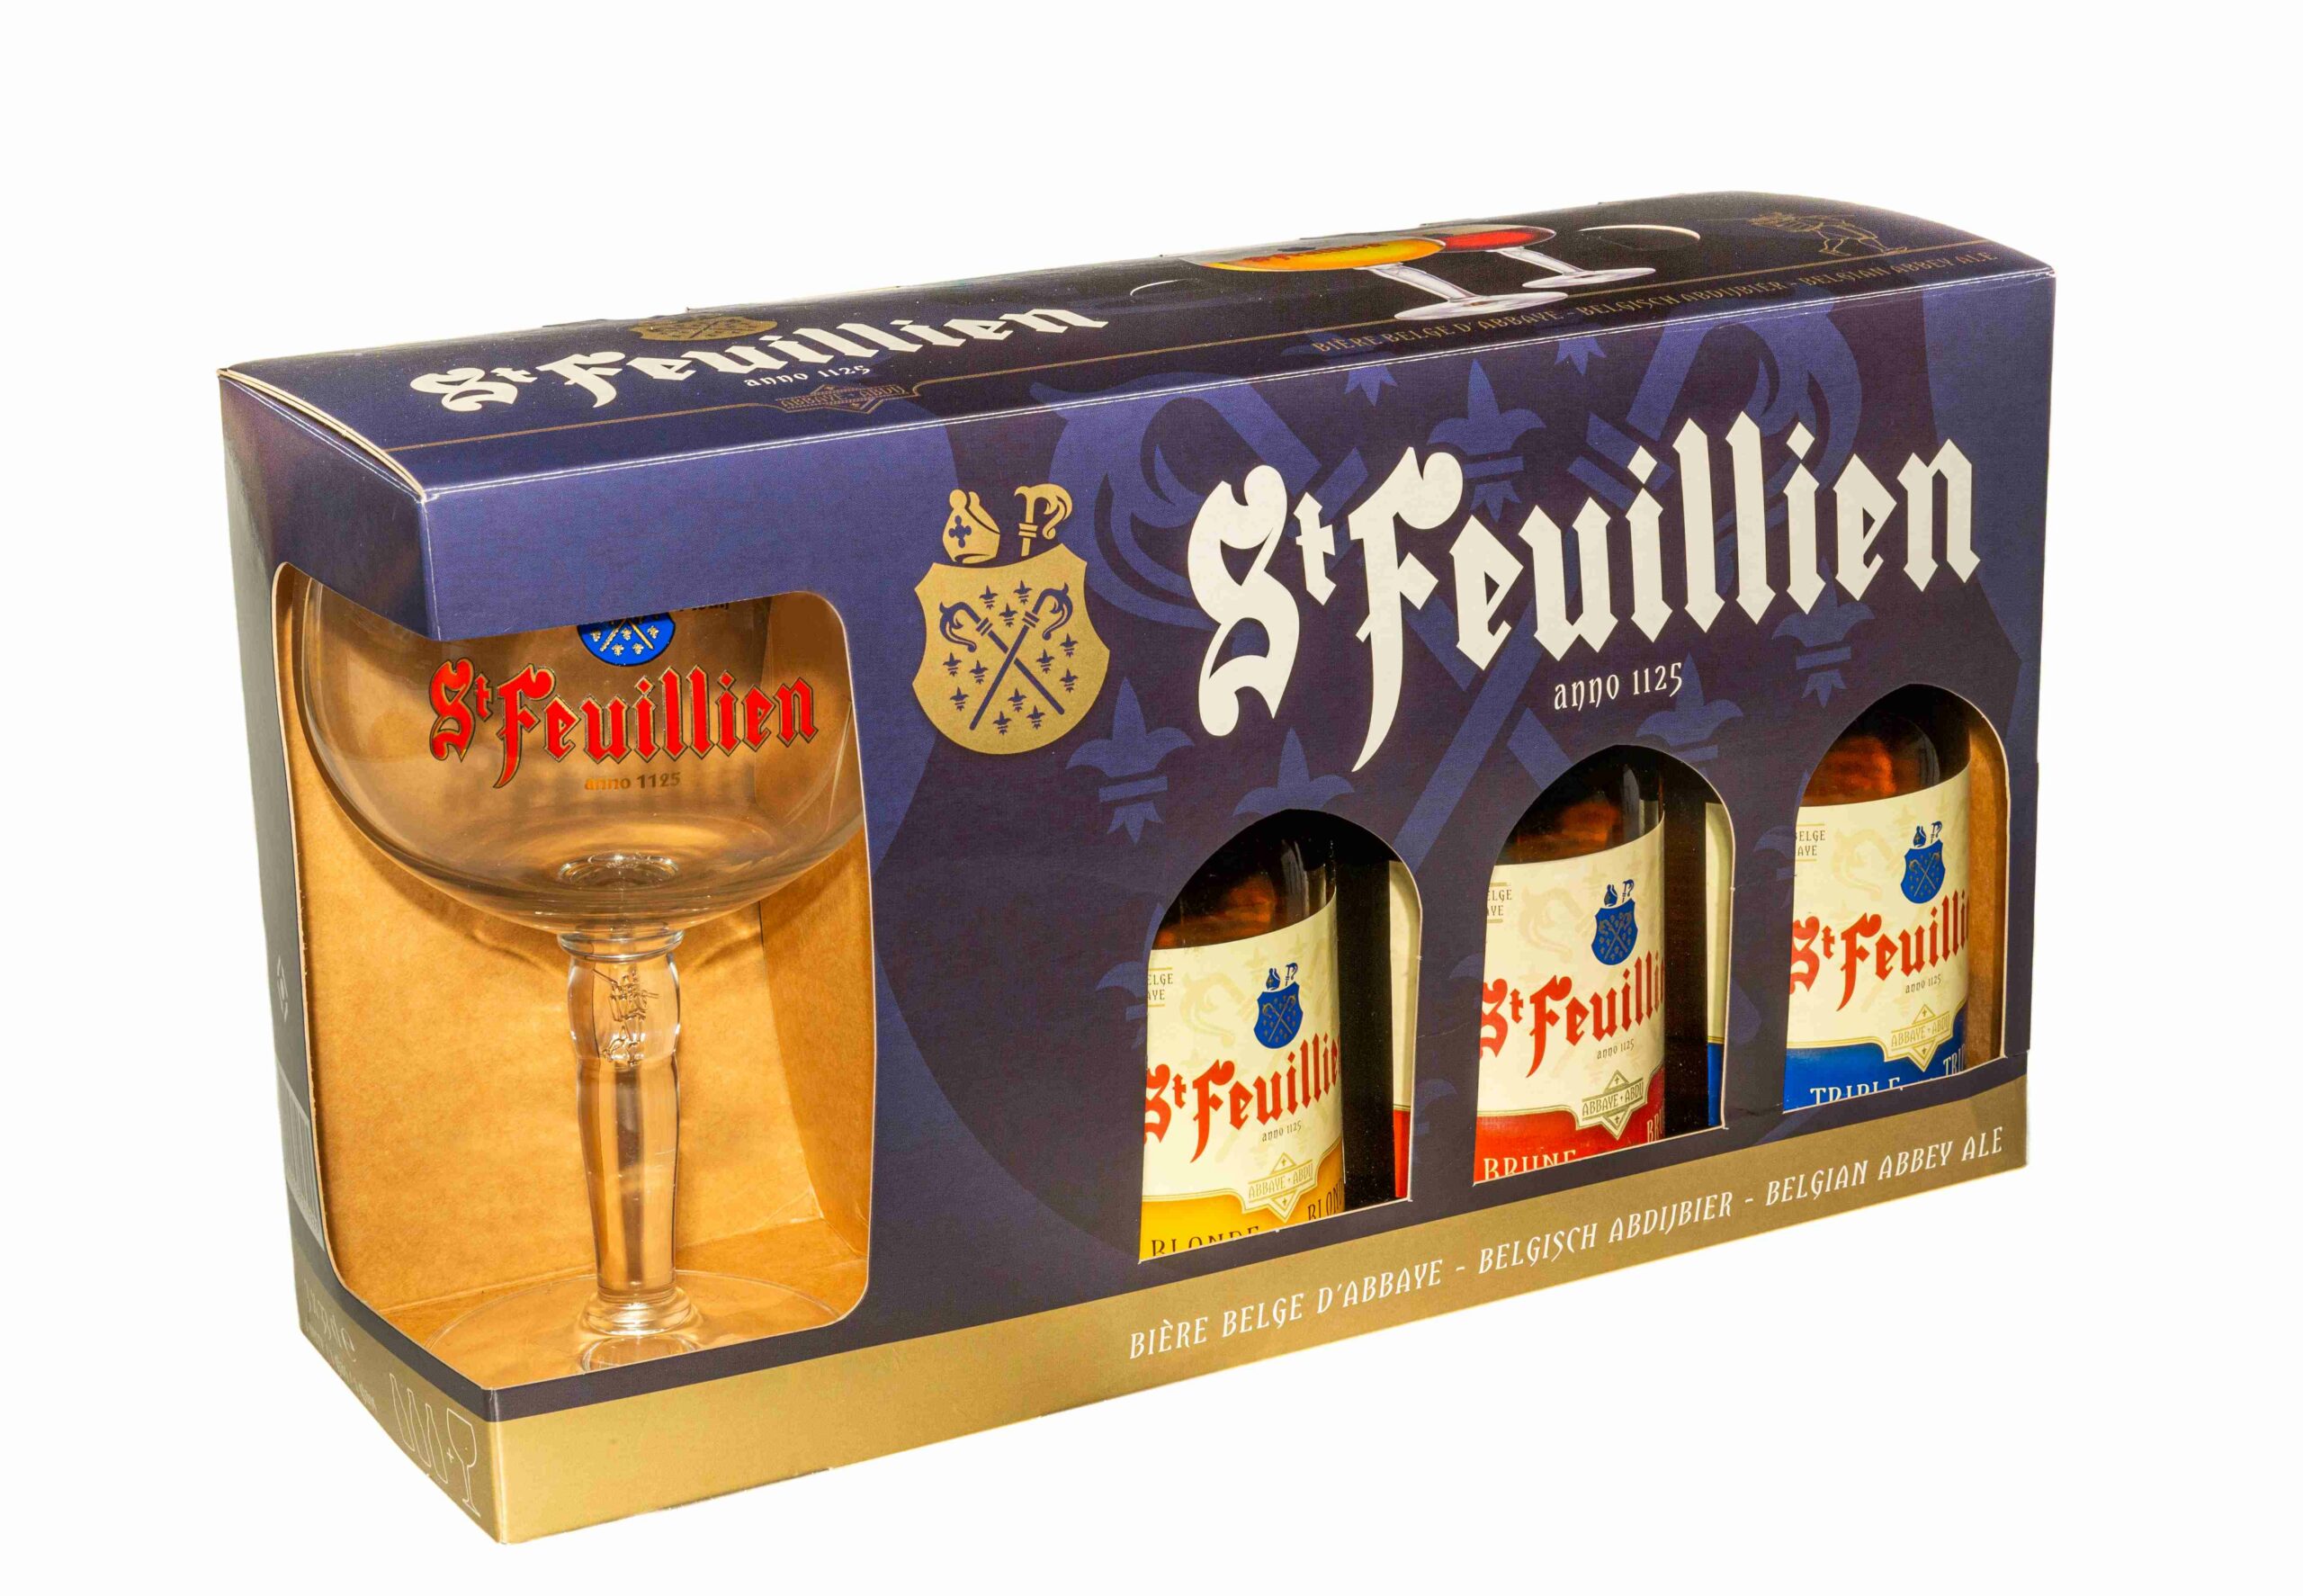 Coffret 12 bières belge découverte